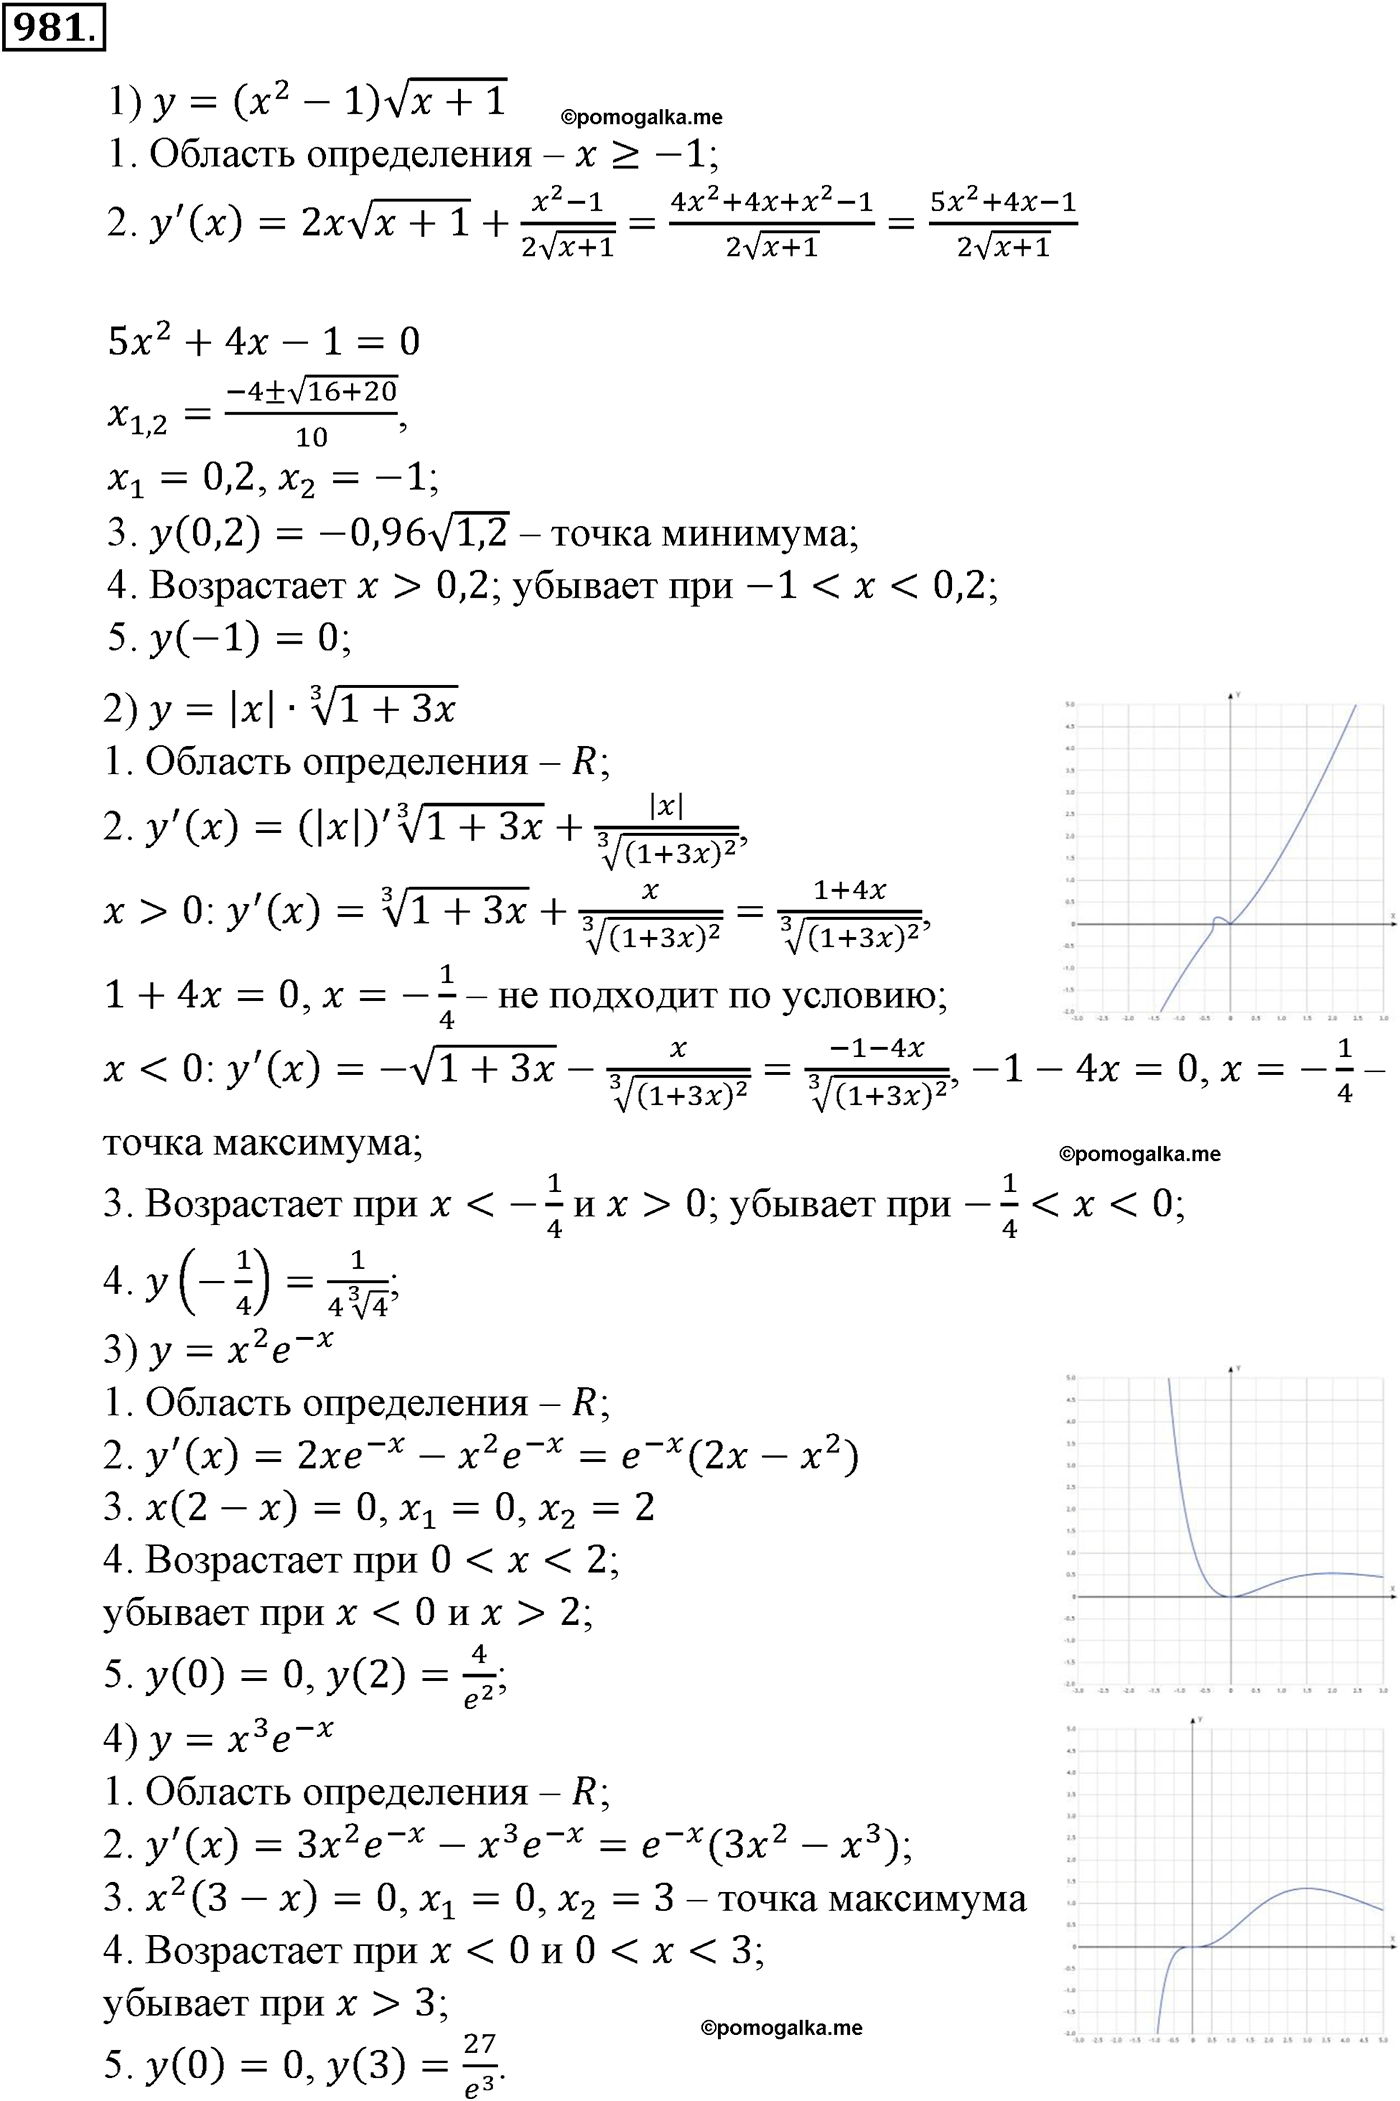 разбор задачи №981 по алгебре за 10-11 класс из учебника Алимова, Колягина